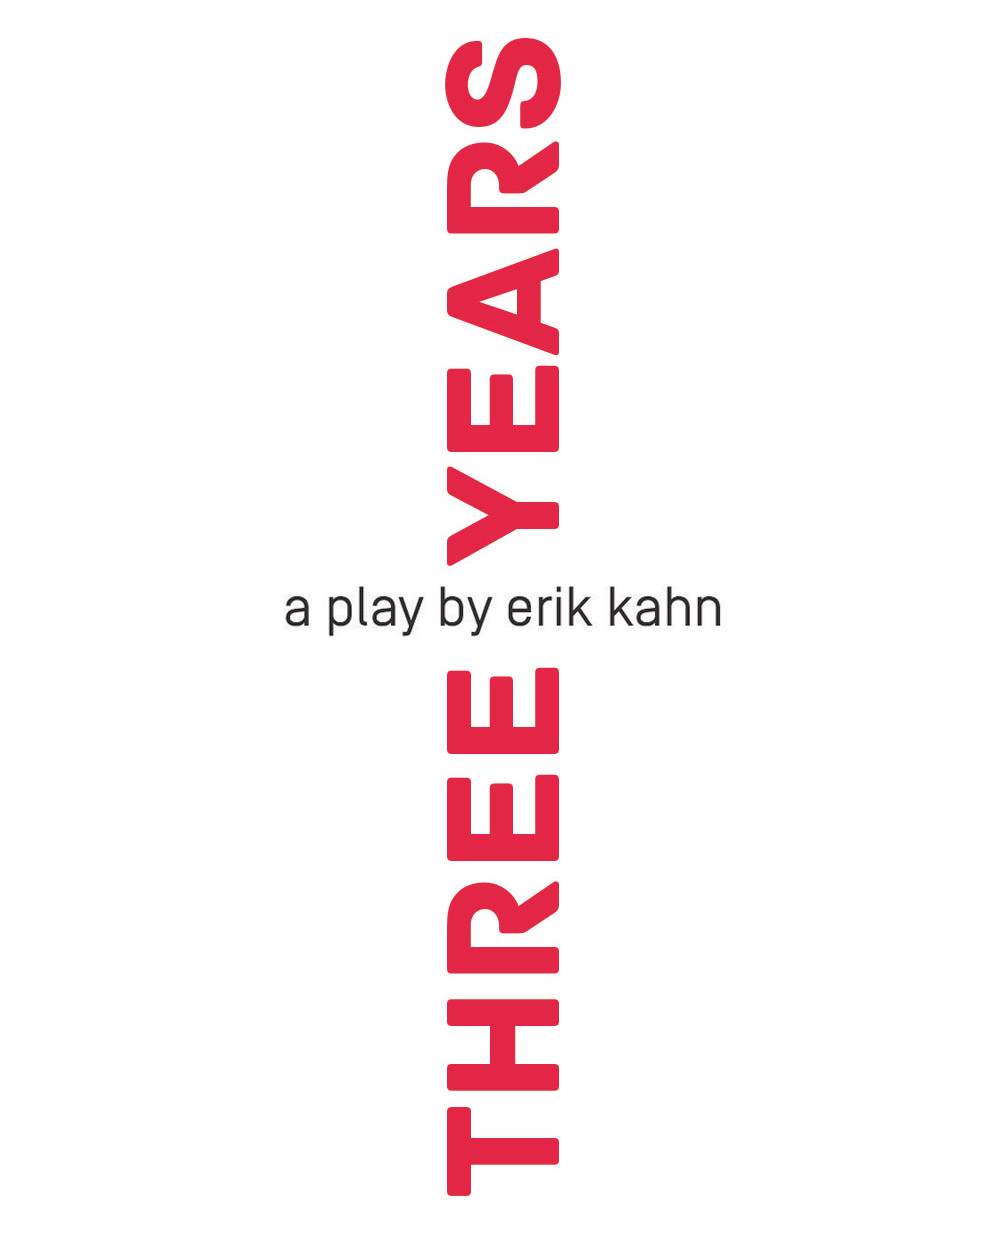 Three Years - A Play by Erik Kahn